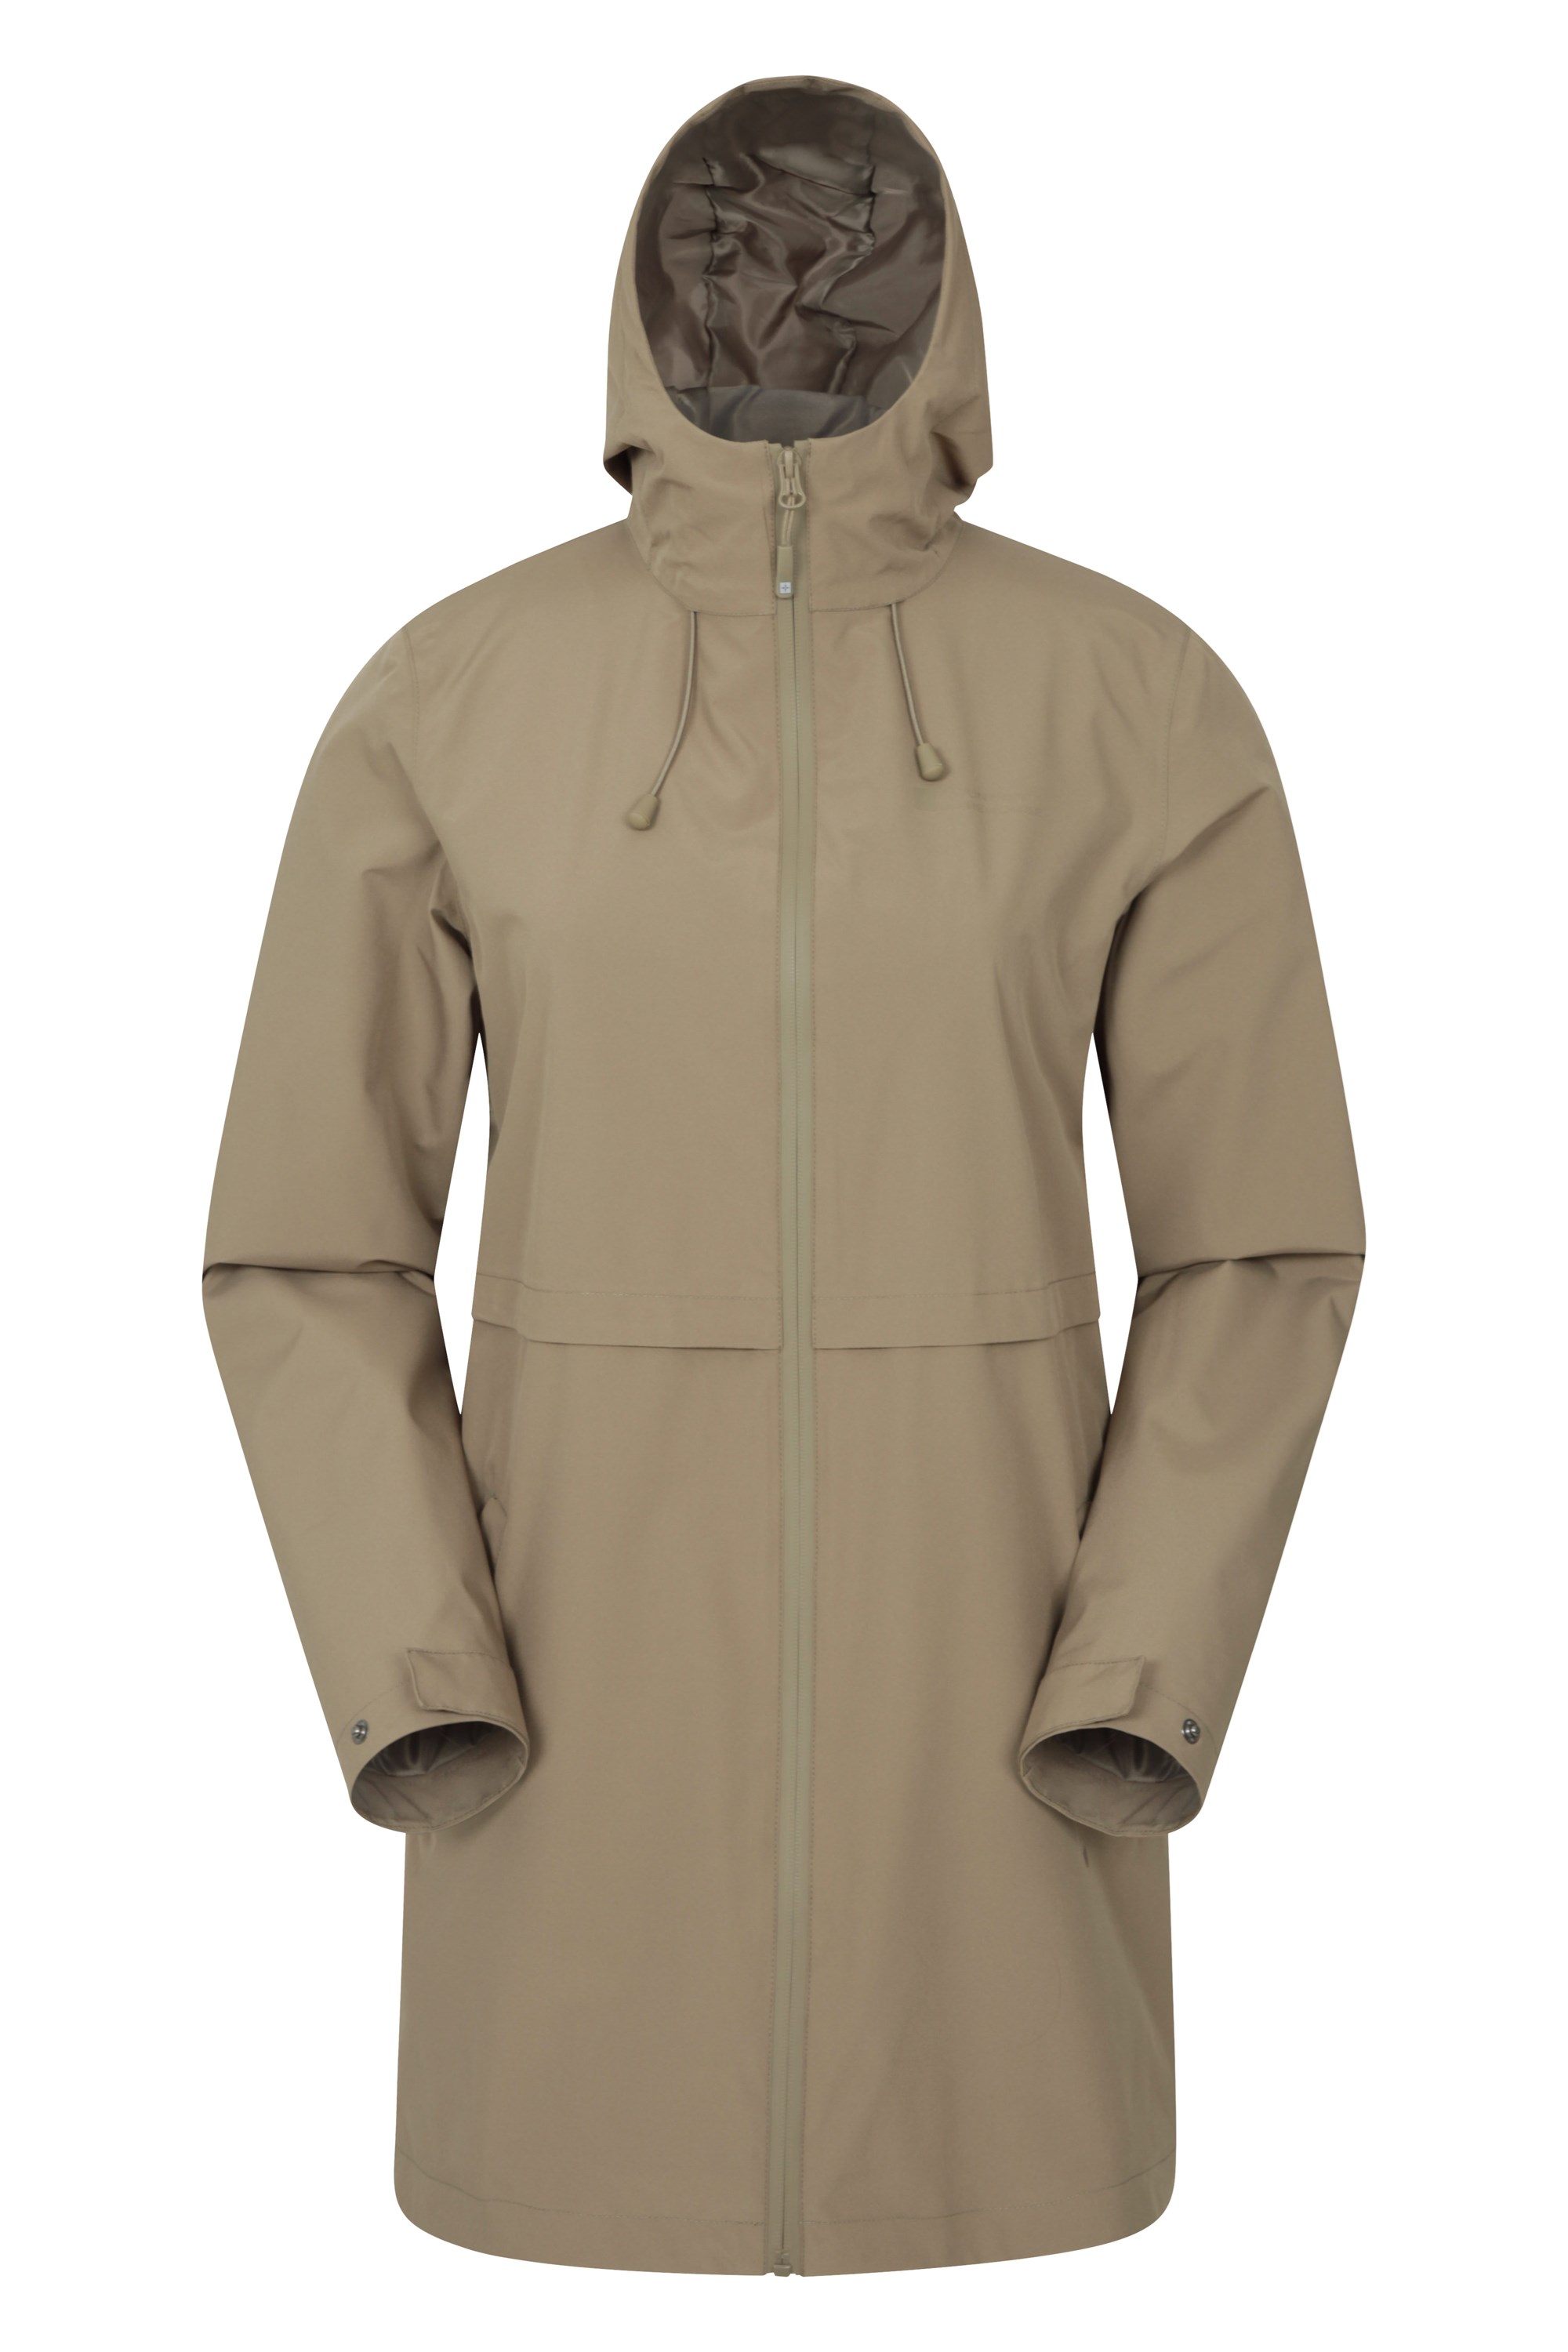 Mountain Warehouse Hilltop Womens Waterproof Jacket 